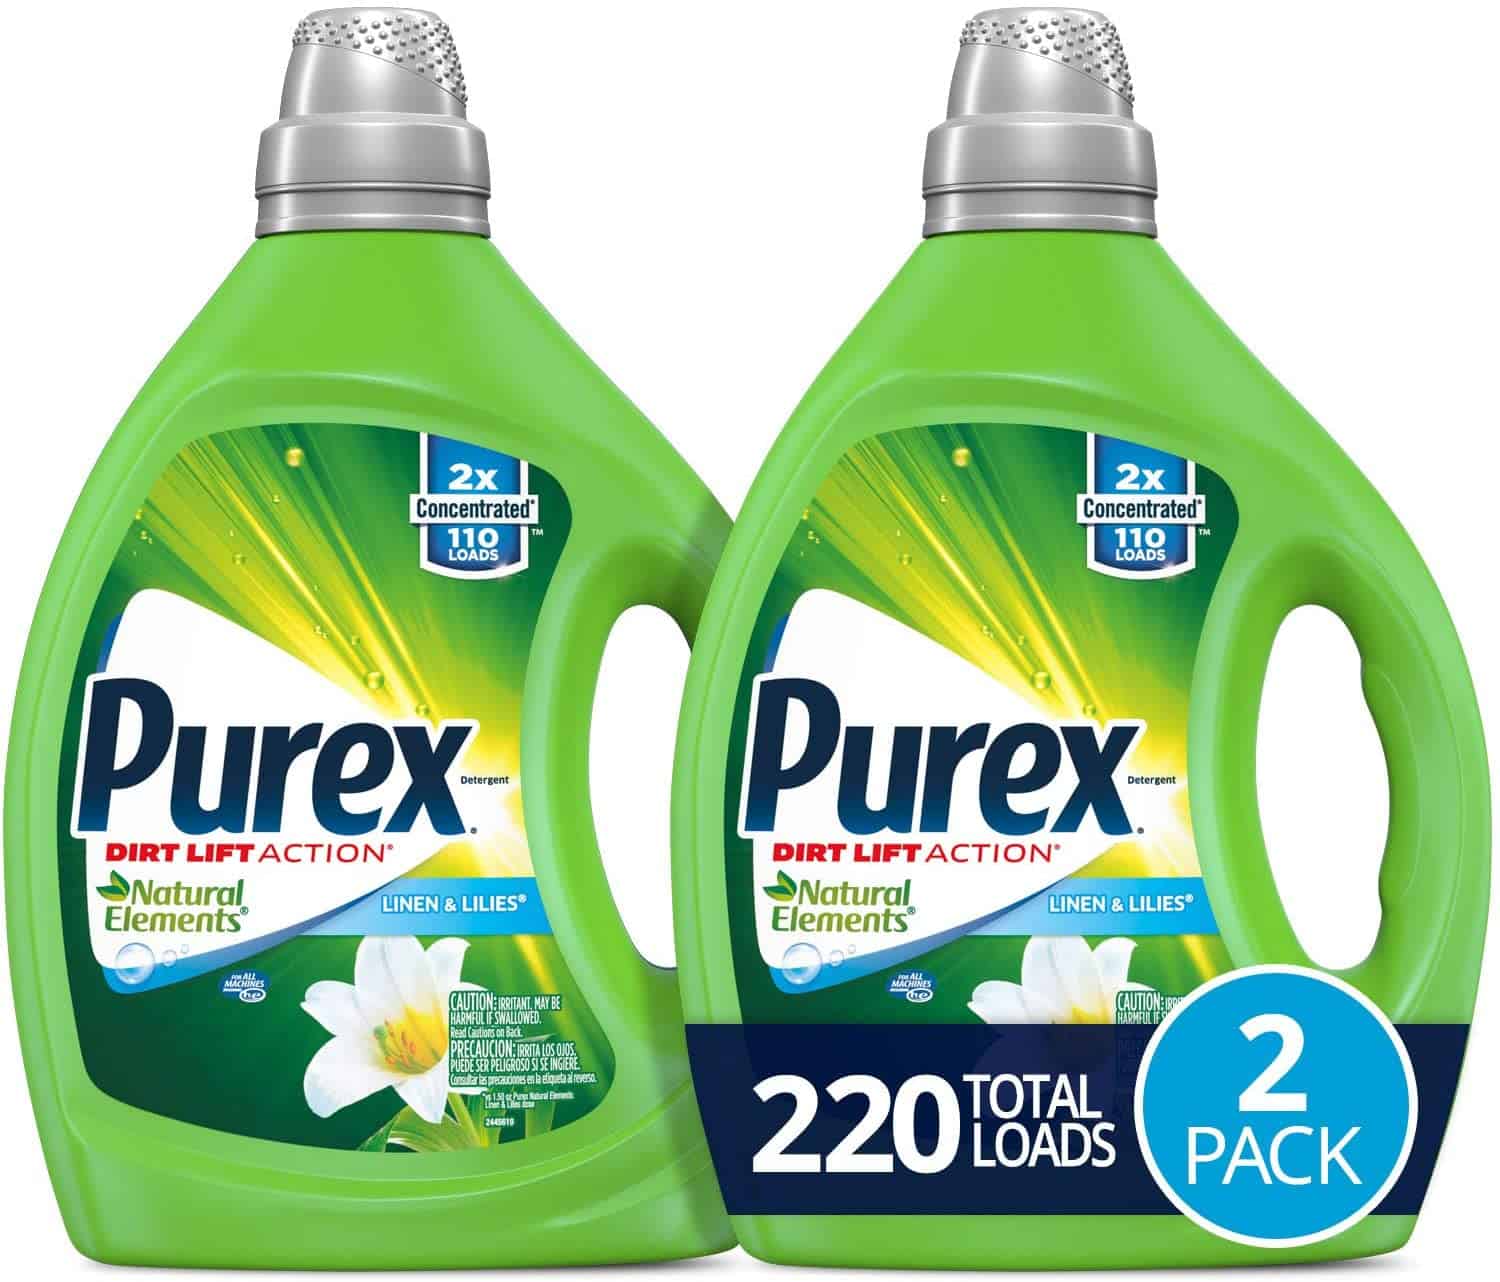 Purex Laundry Detergent 2-Pack